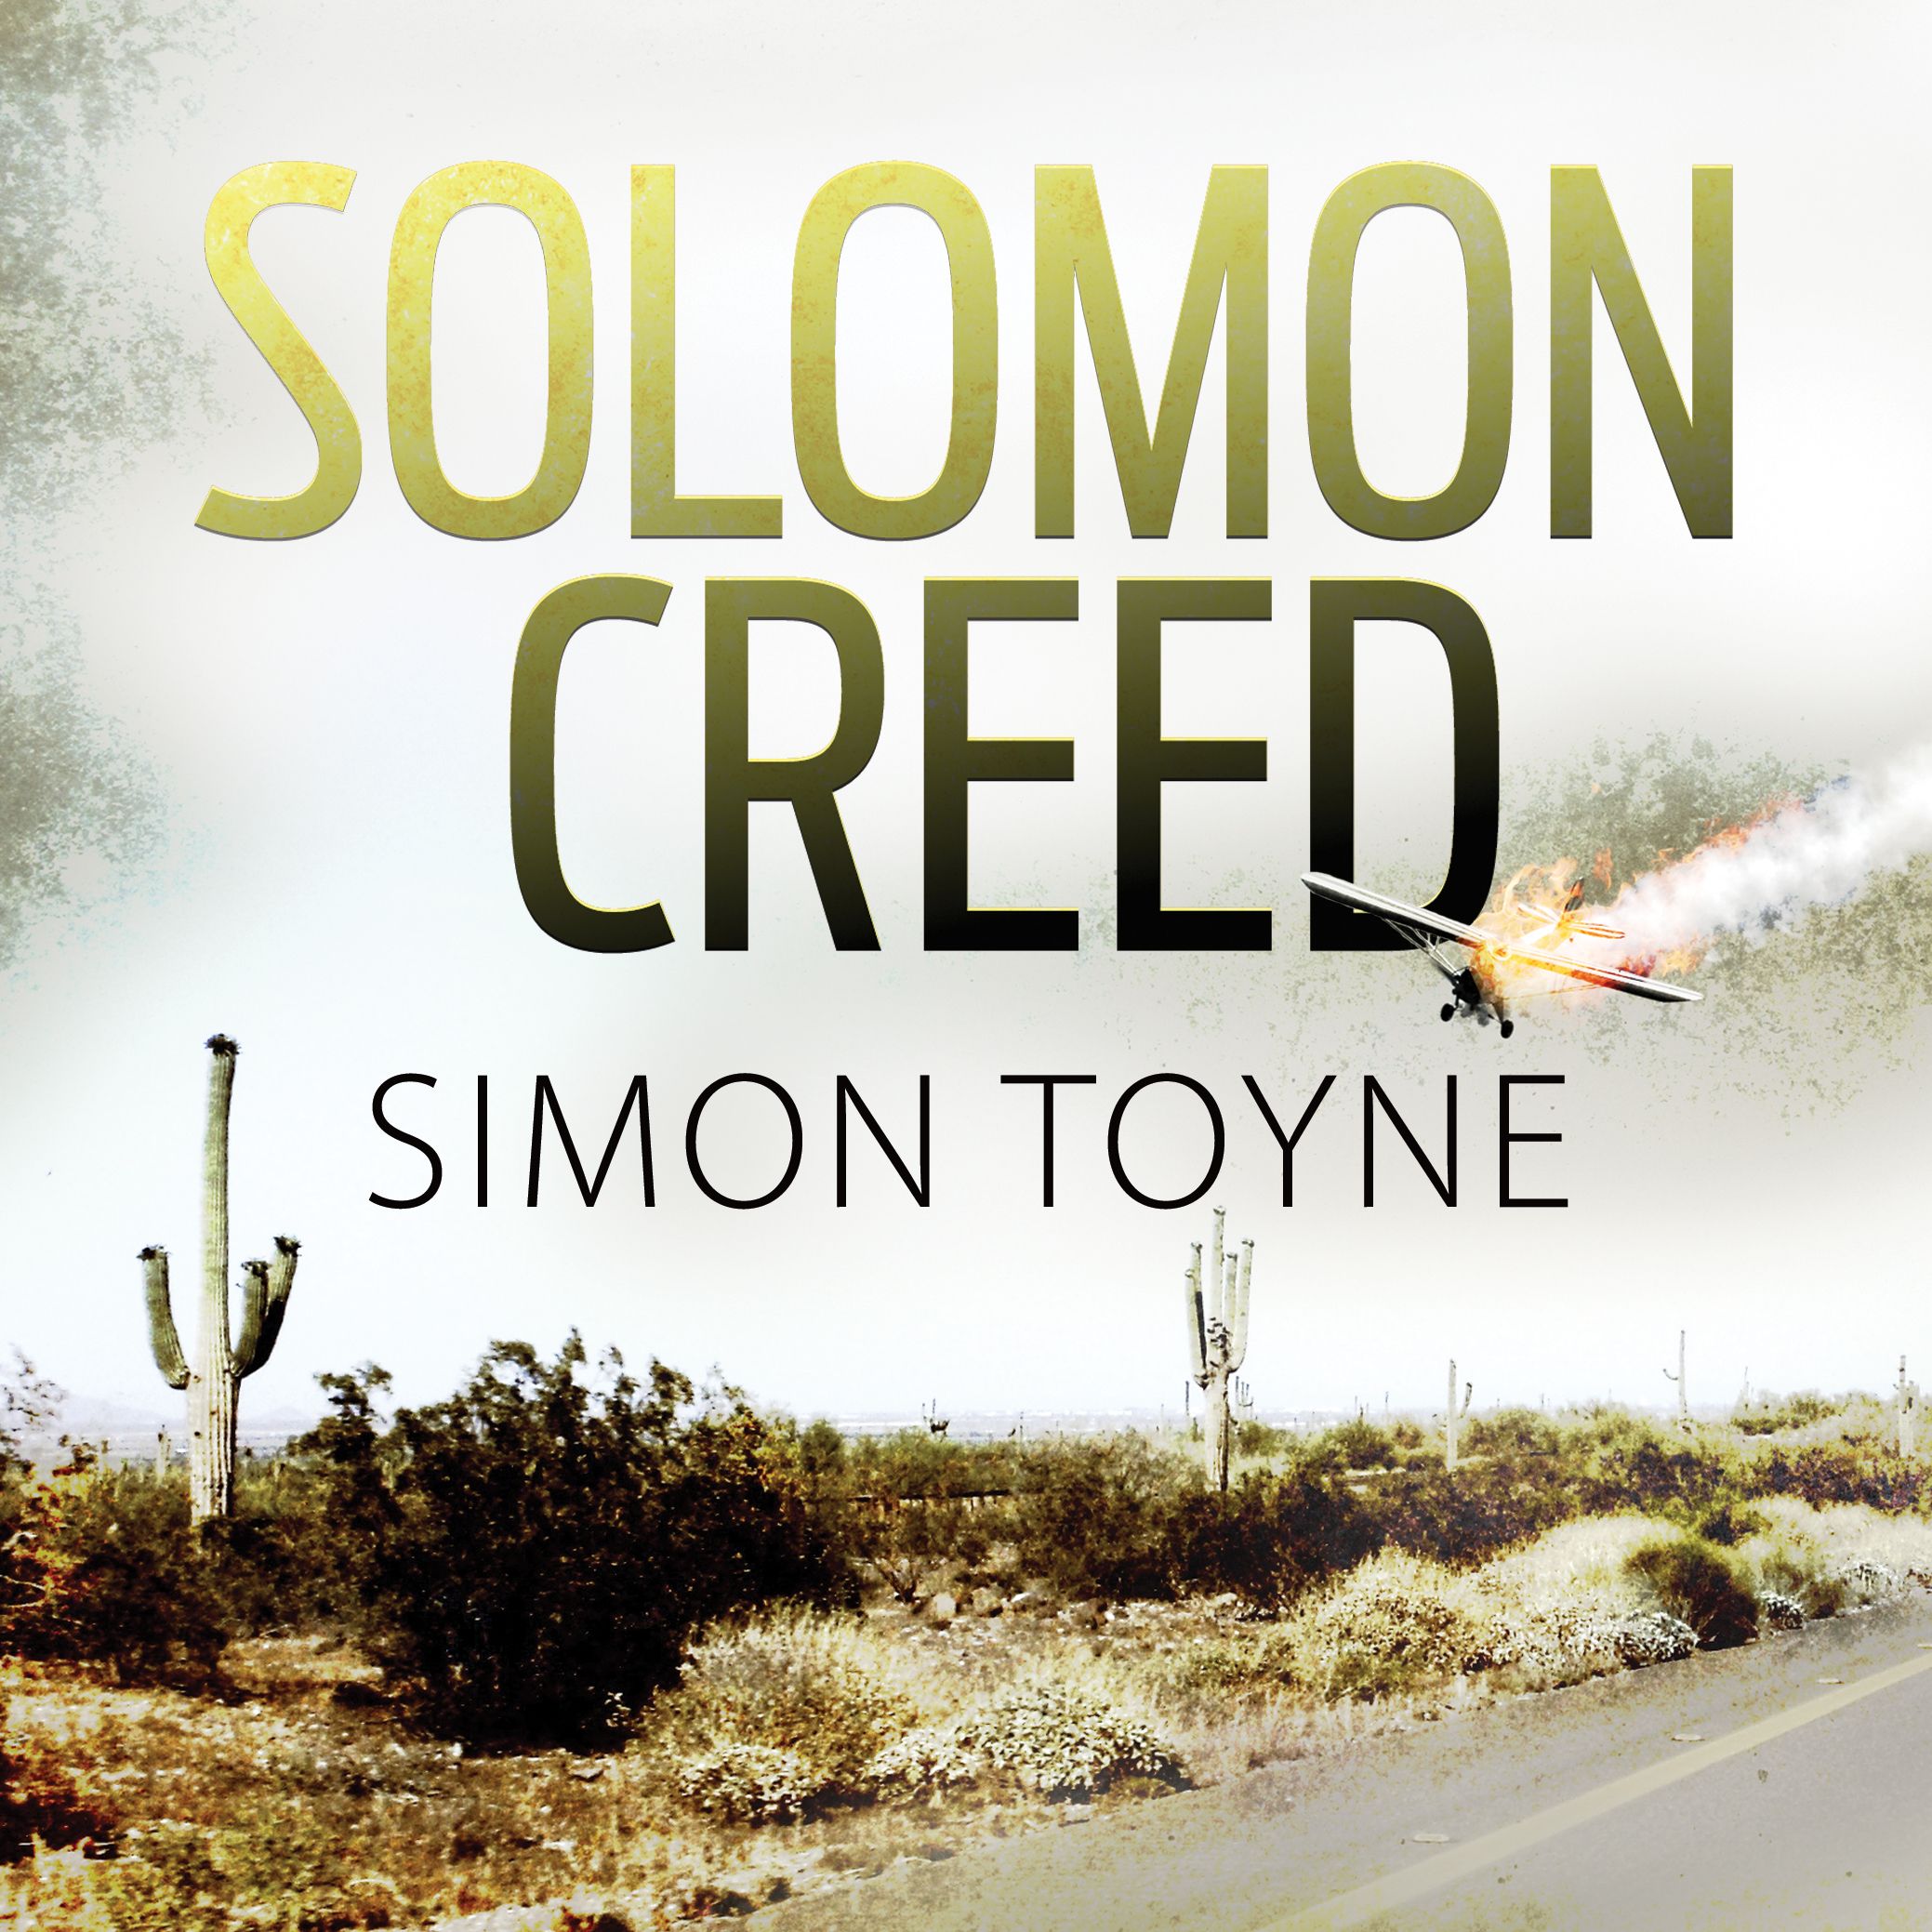 Solomon Creed, ljudbok av Simon Toyne